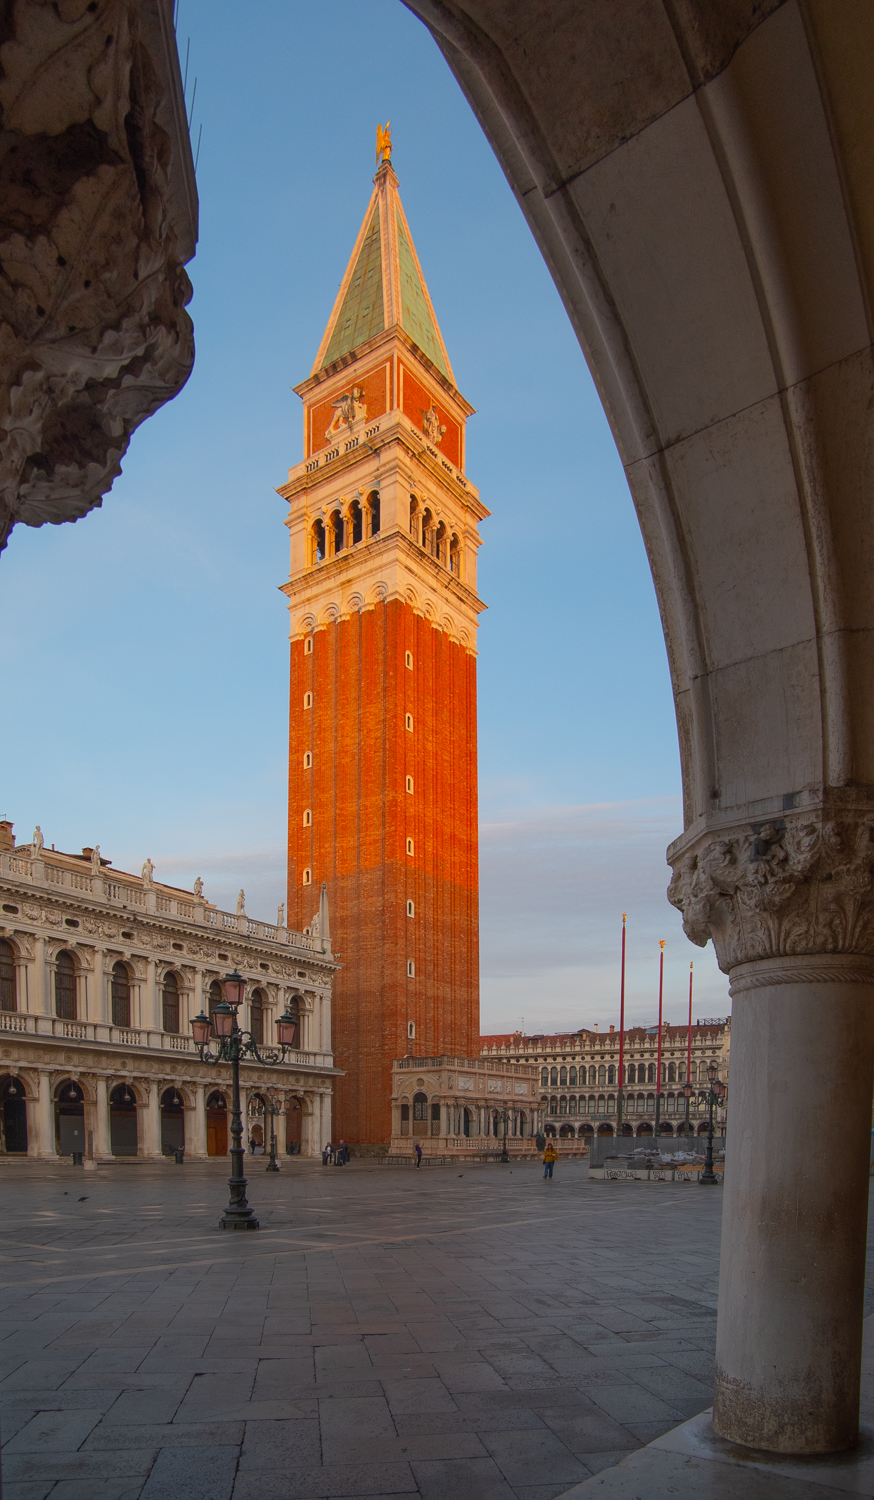 Clocher emblématique (campanile) dans l'historique Place Saint Marc, Venise, Italie. Tourné à la lumière dorée du matin et encadré par une arche à travers la place. ©Jerry Ginsberg